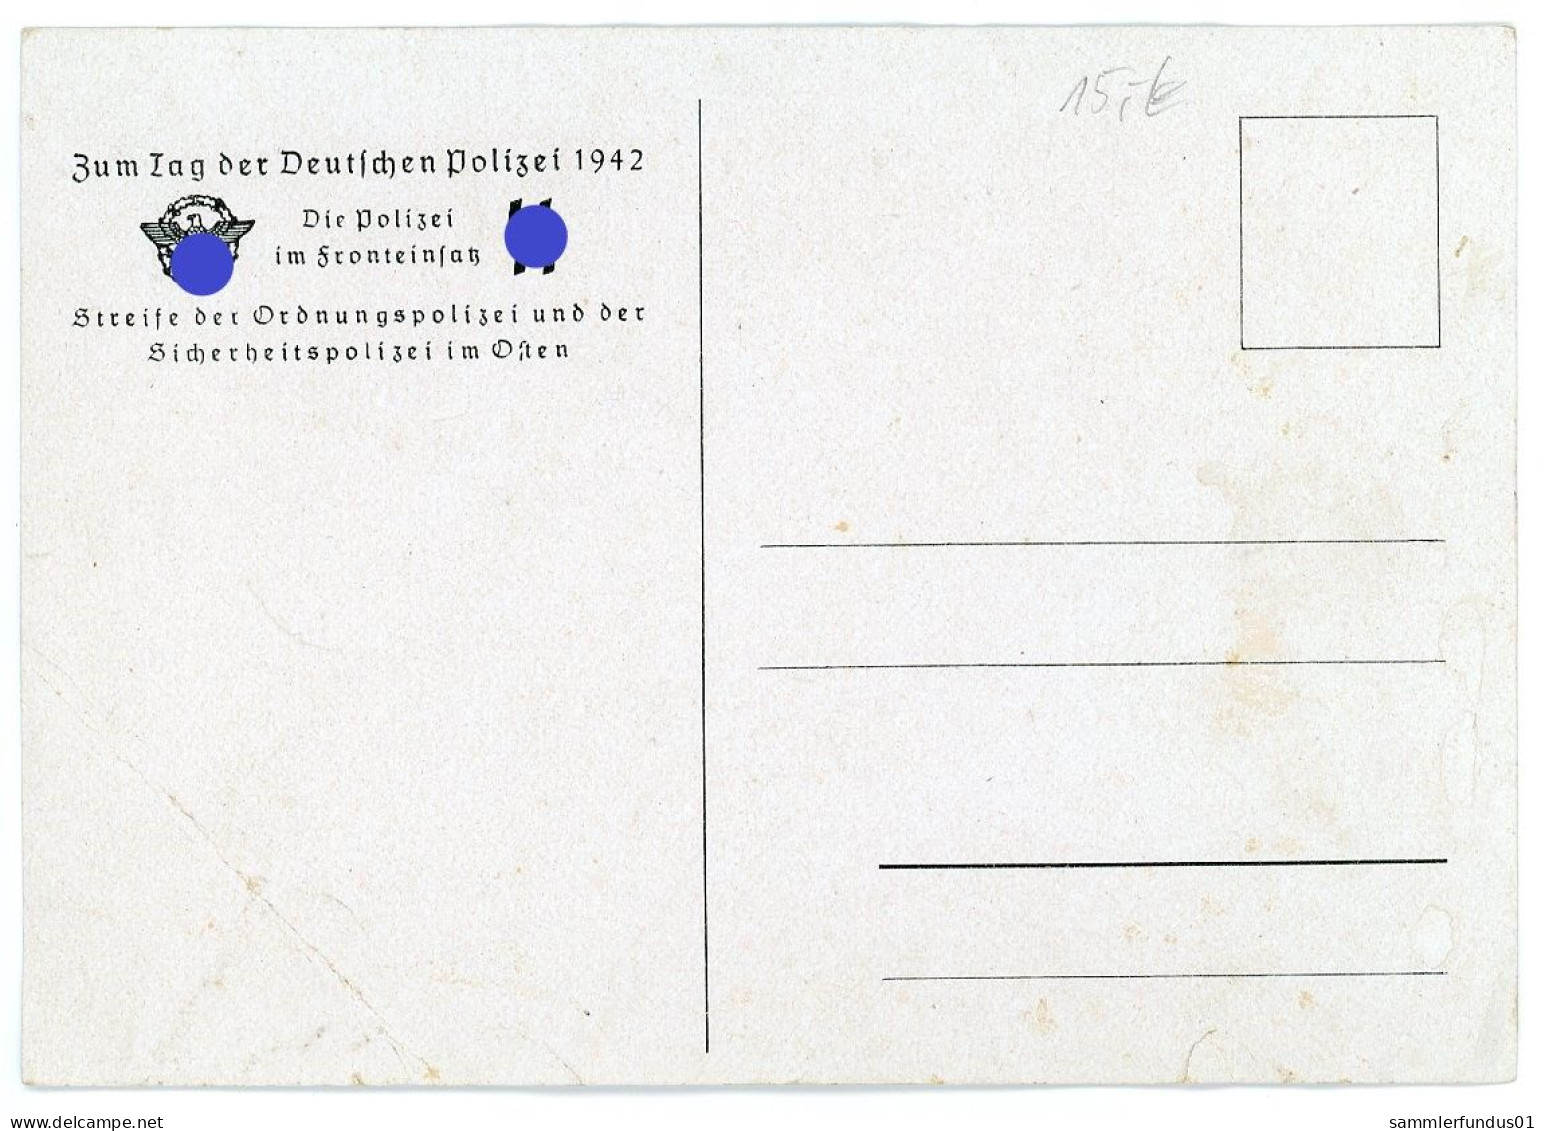 AK/CP  Propaganda Nazi  Polizei    Ungel/uncirc. 1933-45  Erhaltung/Cond. 3-  Nr.1752 - Weltkrieg 1939-45